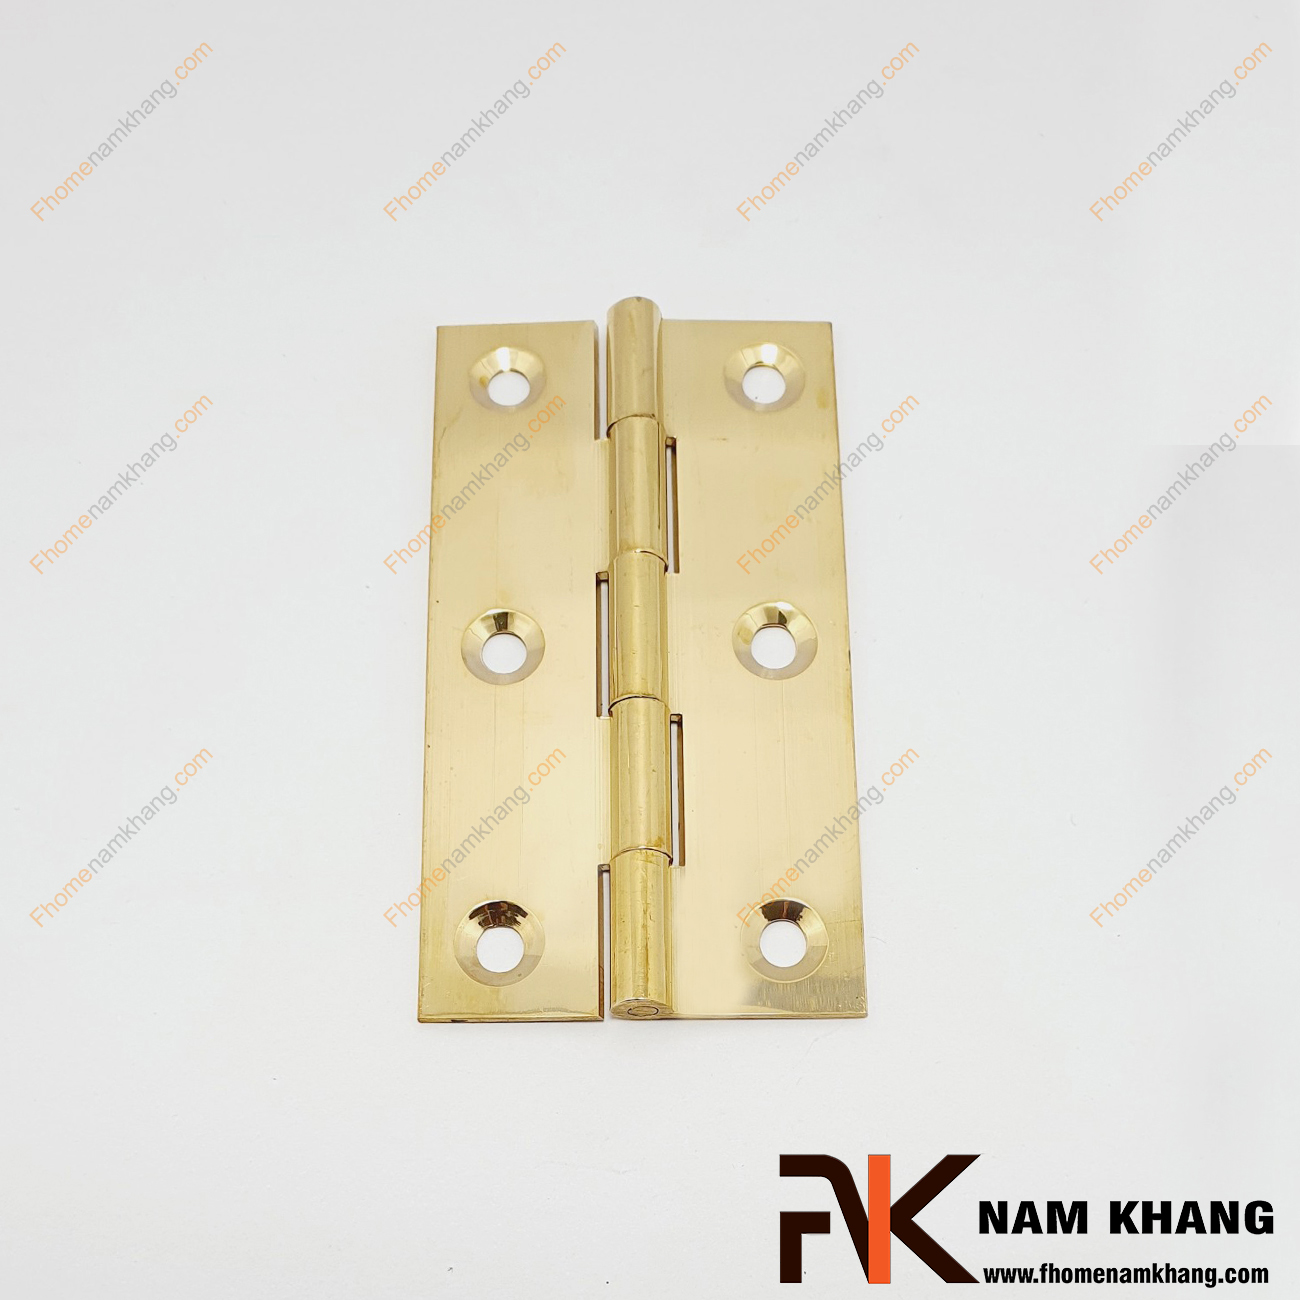 Bản lề cửa tủ màu đồng vàng NK470-9FDO được sản xuất từ đồng cao cấp. Bề mặt được xử lý cao, với kích thước nhỏ chuyên dùng cho các dạng tủ kệ nhỏ, cánh cửa tủ, cánh hộp gỗ, cánh thùng gỗ và hộp quà tặng.